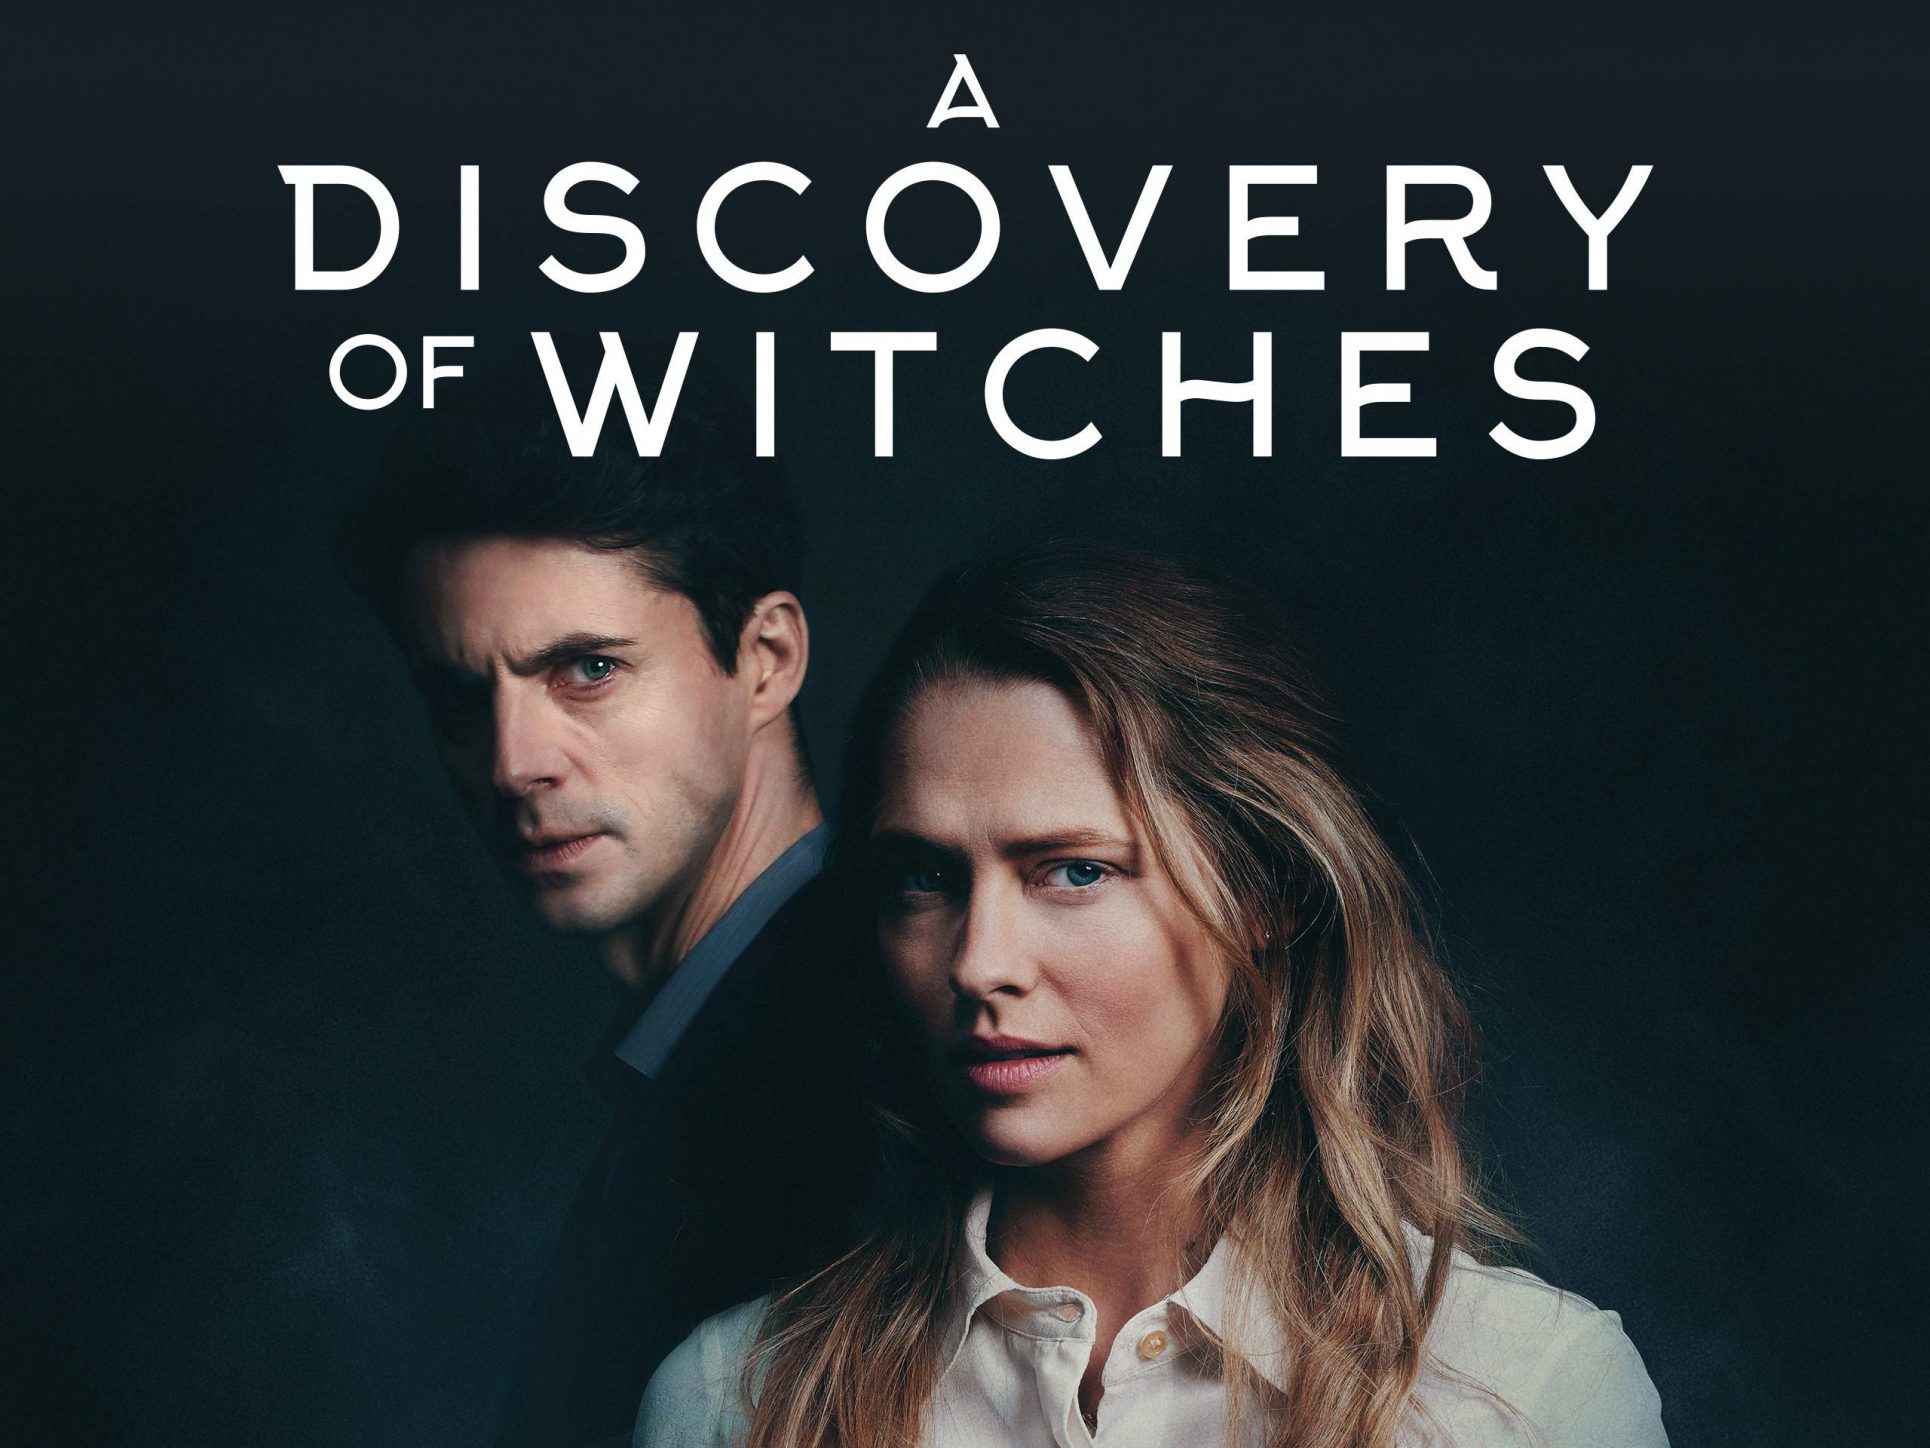 ¿Qué puedo ver? “A Discovery of Witches” (El descubrimiento de las brujas)